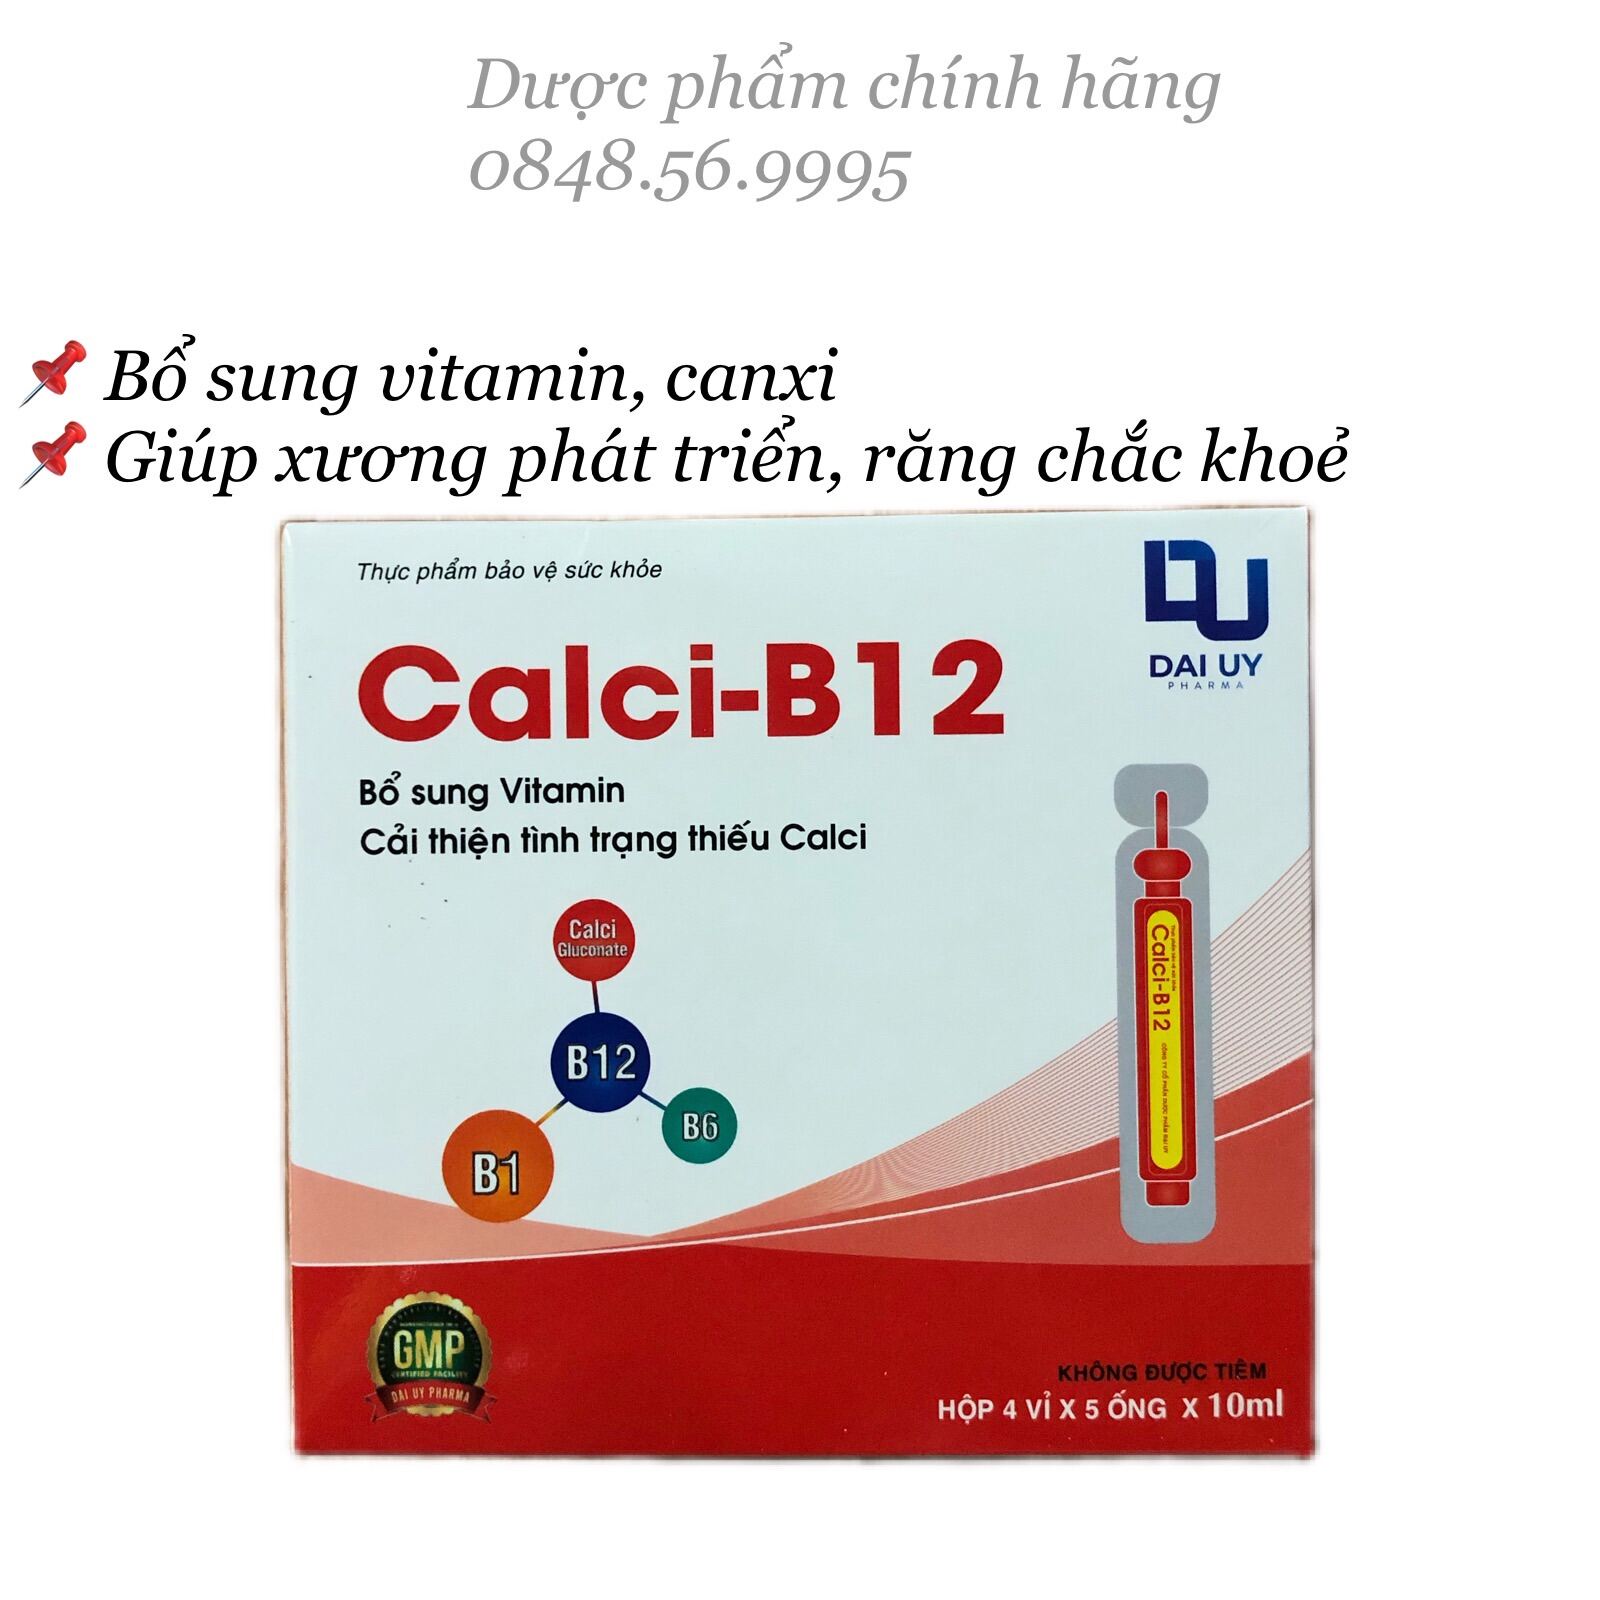 Calci B12 hộp 20 ống - Bổ sung vitamin, canxi B12